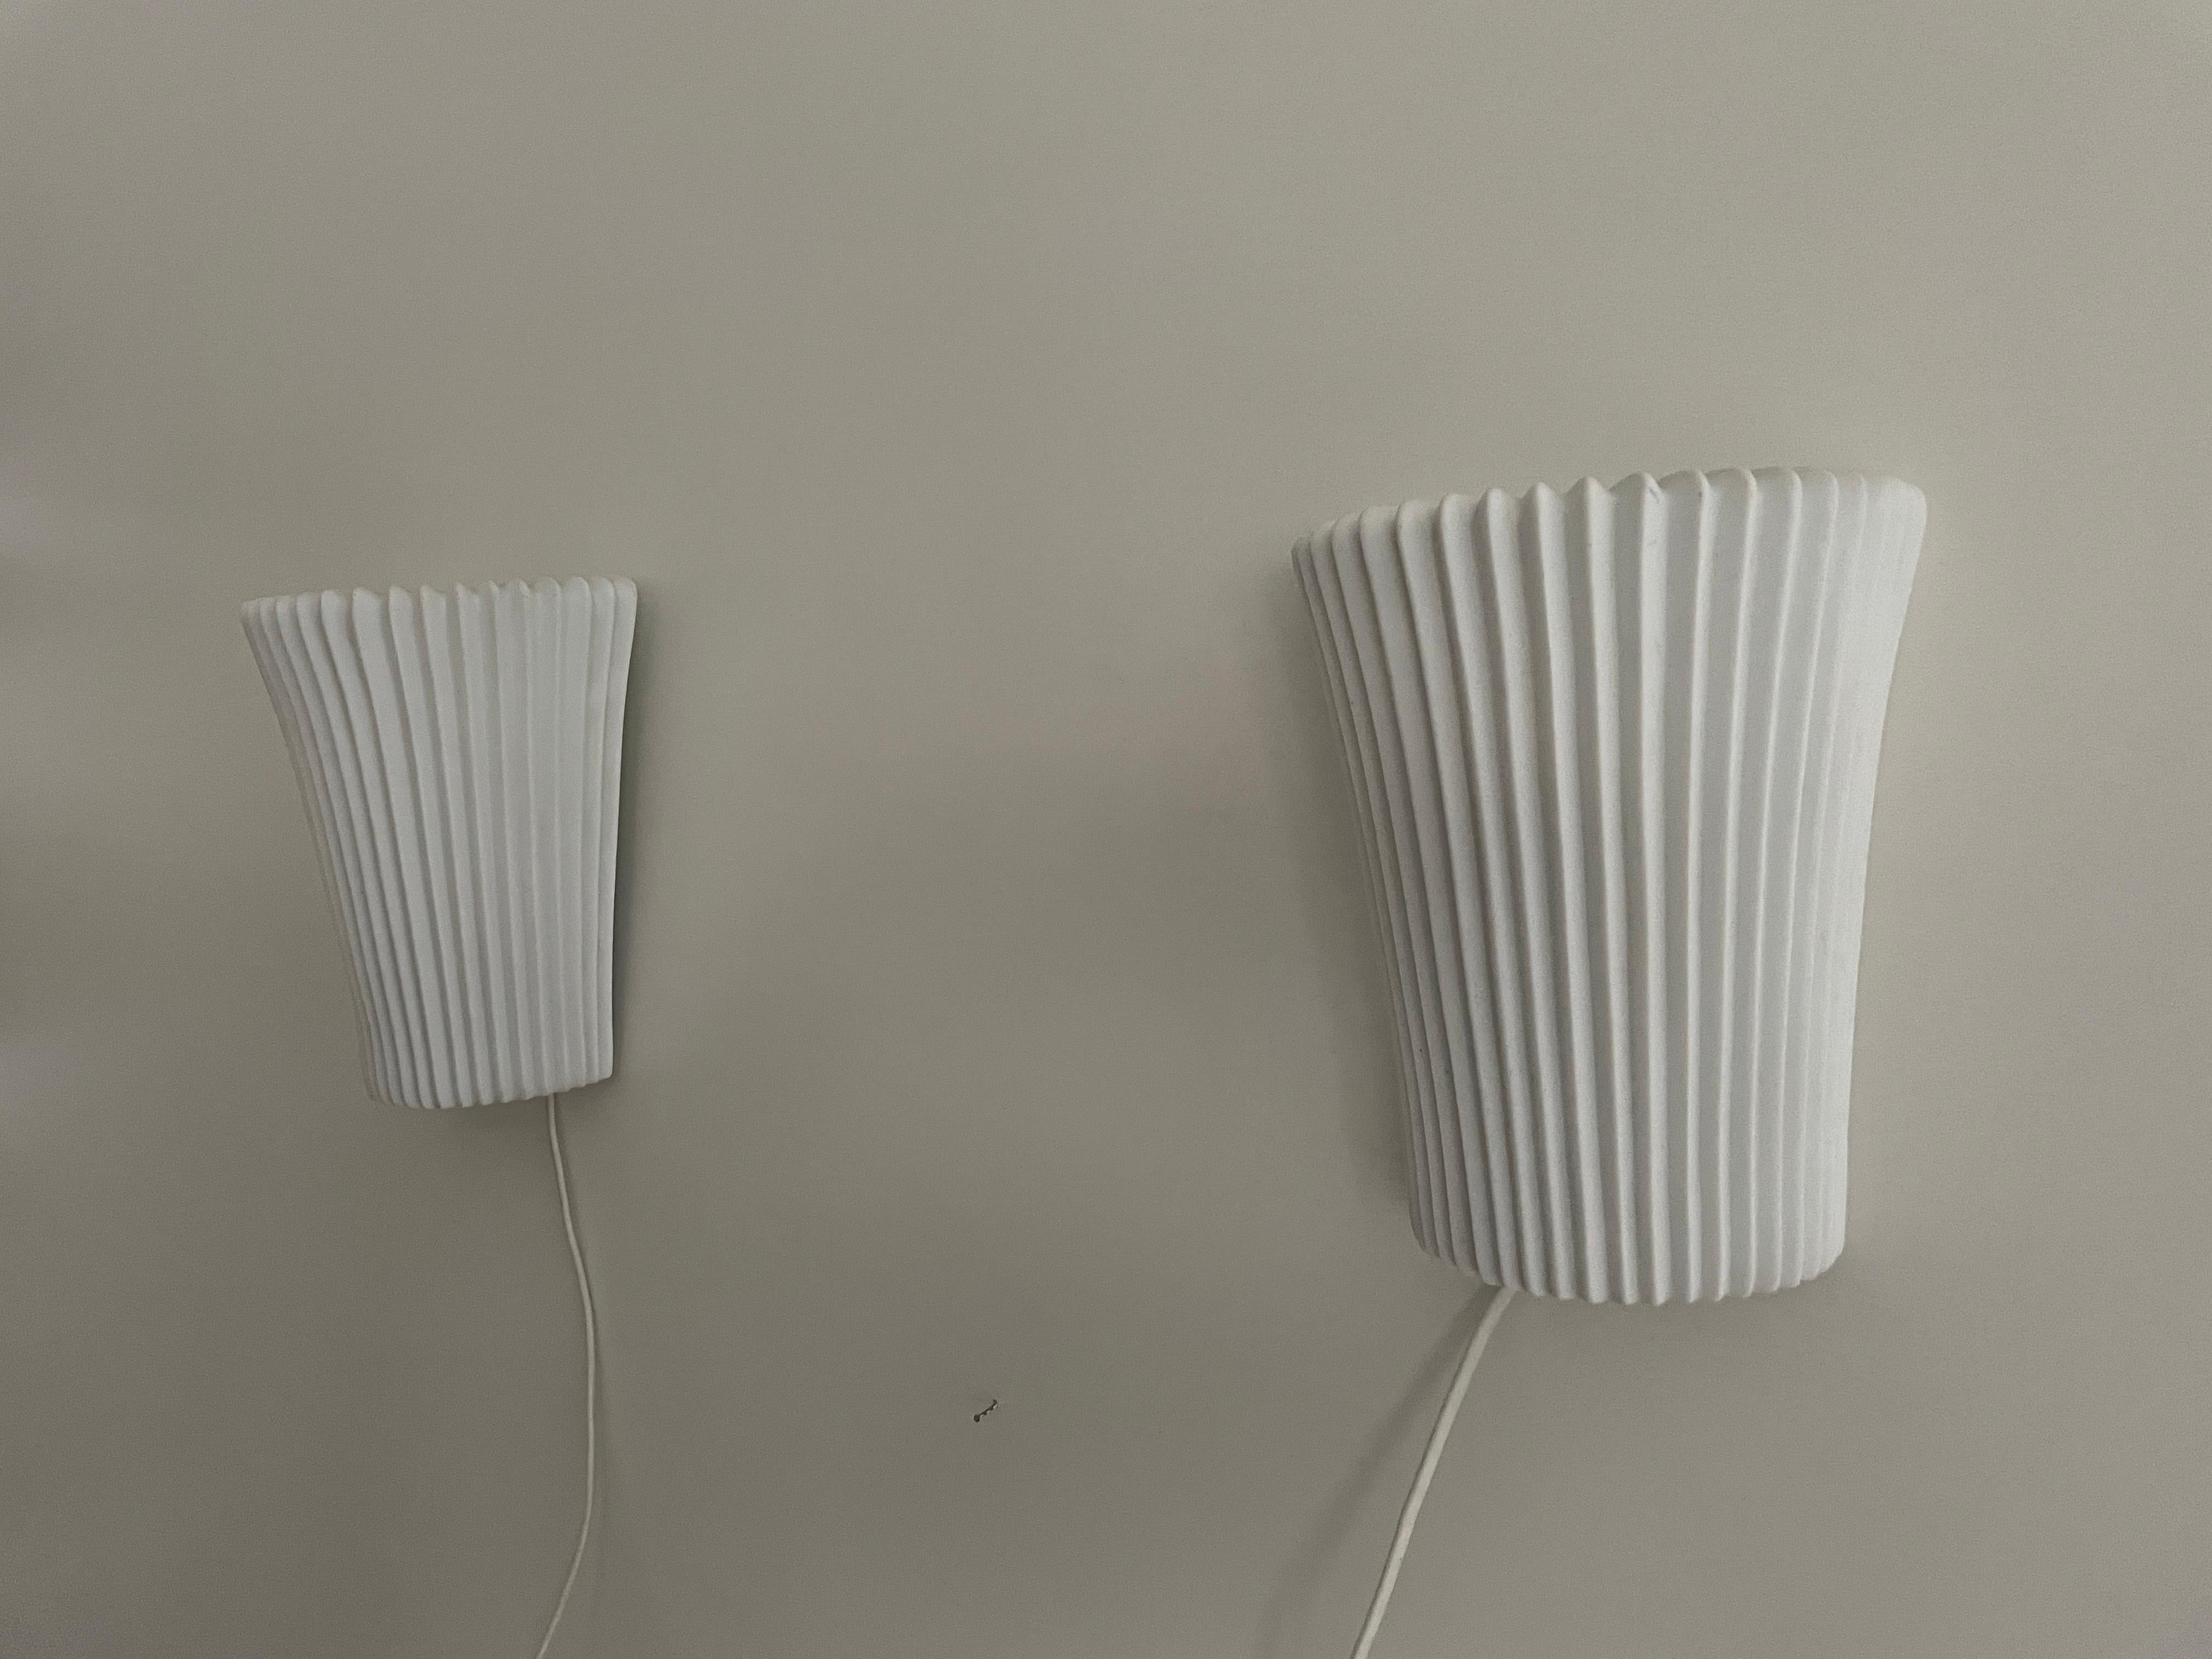 Paar Wandleuchter aus weißer Keramik mit Blumenmuster, 1960er Jahre, Deutschland

Sehr schöne Wandlampen von hoher Qualität.

Die Lampen sind in sehr gutem Vintage-Zustand.

Diese Lampen funktionieren mit E27 Standard-Glühbirnen. 
Verkabelt und für